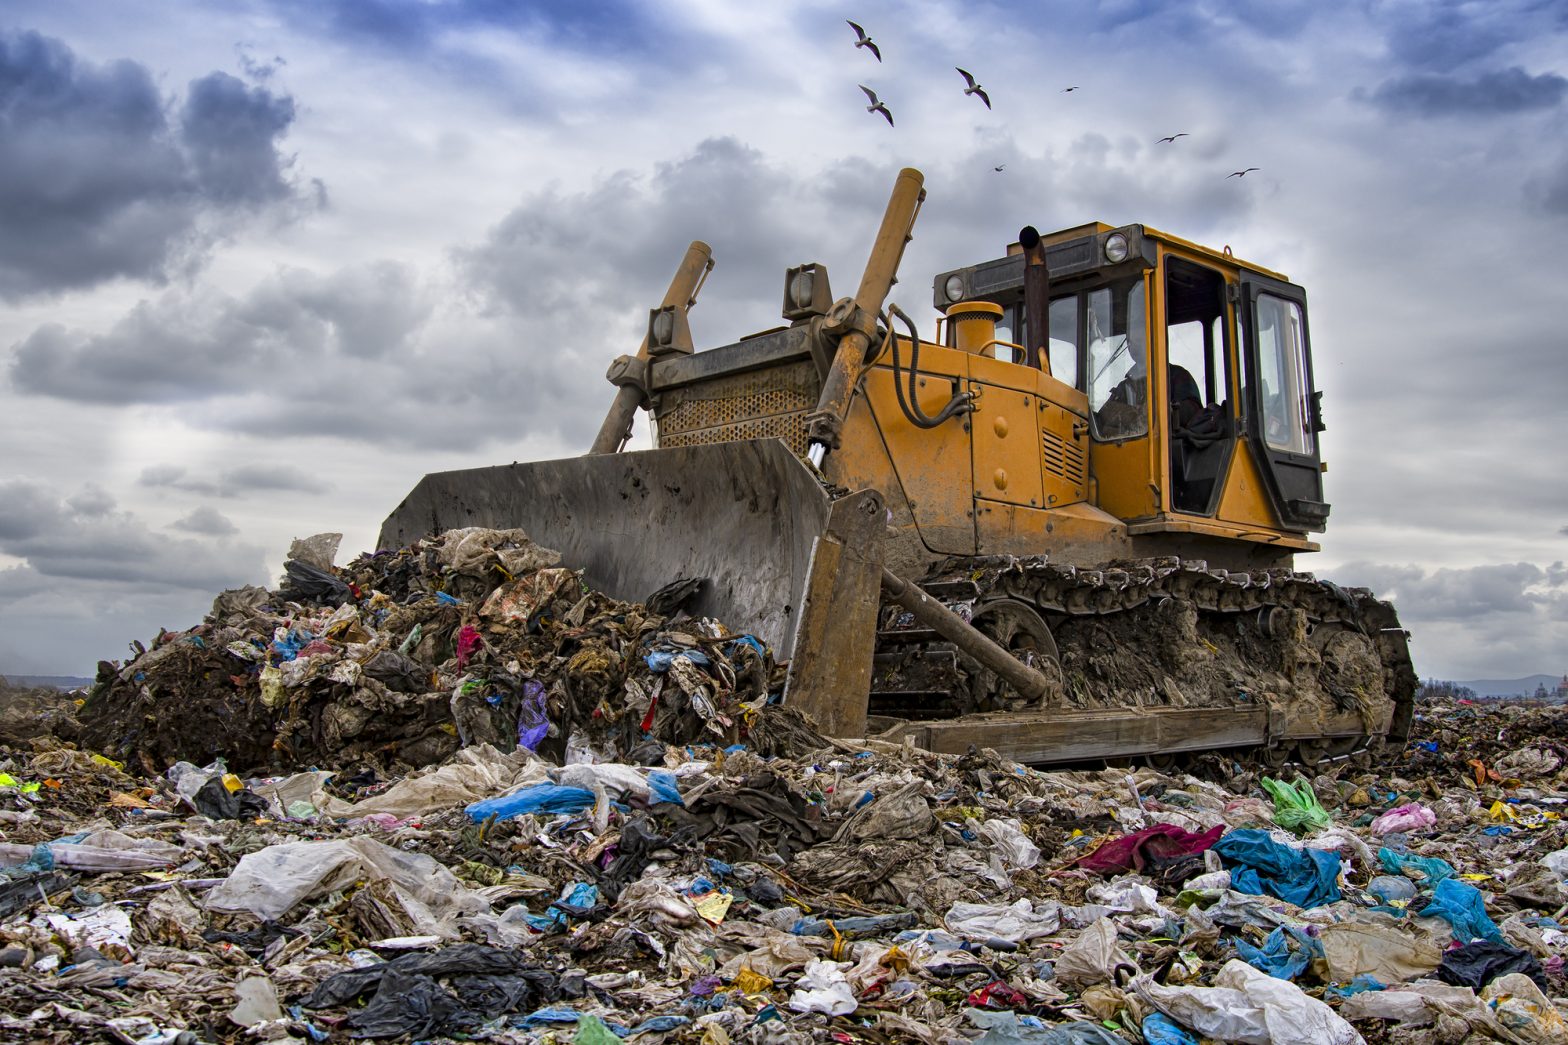 A yellow bulldozer atop a mound of trash, moving debris at a landfill.